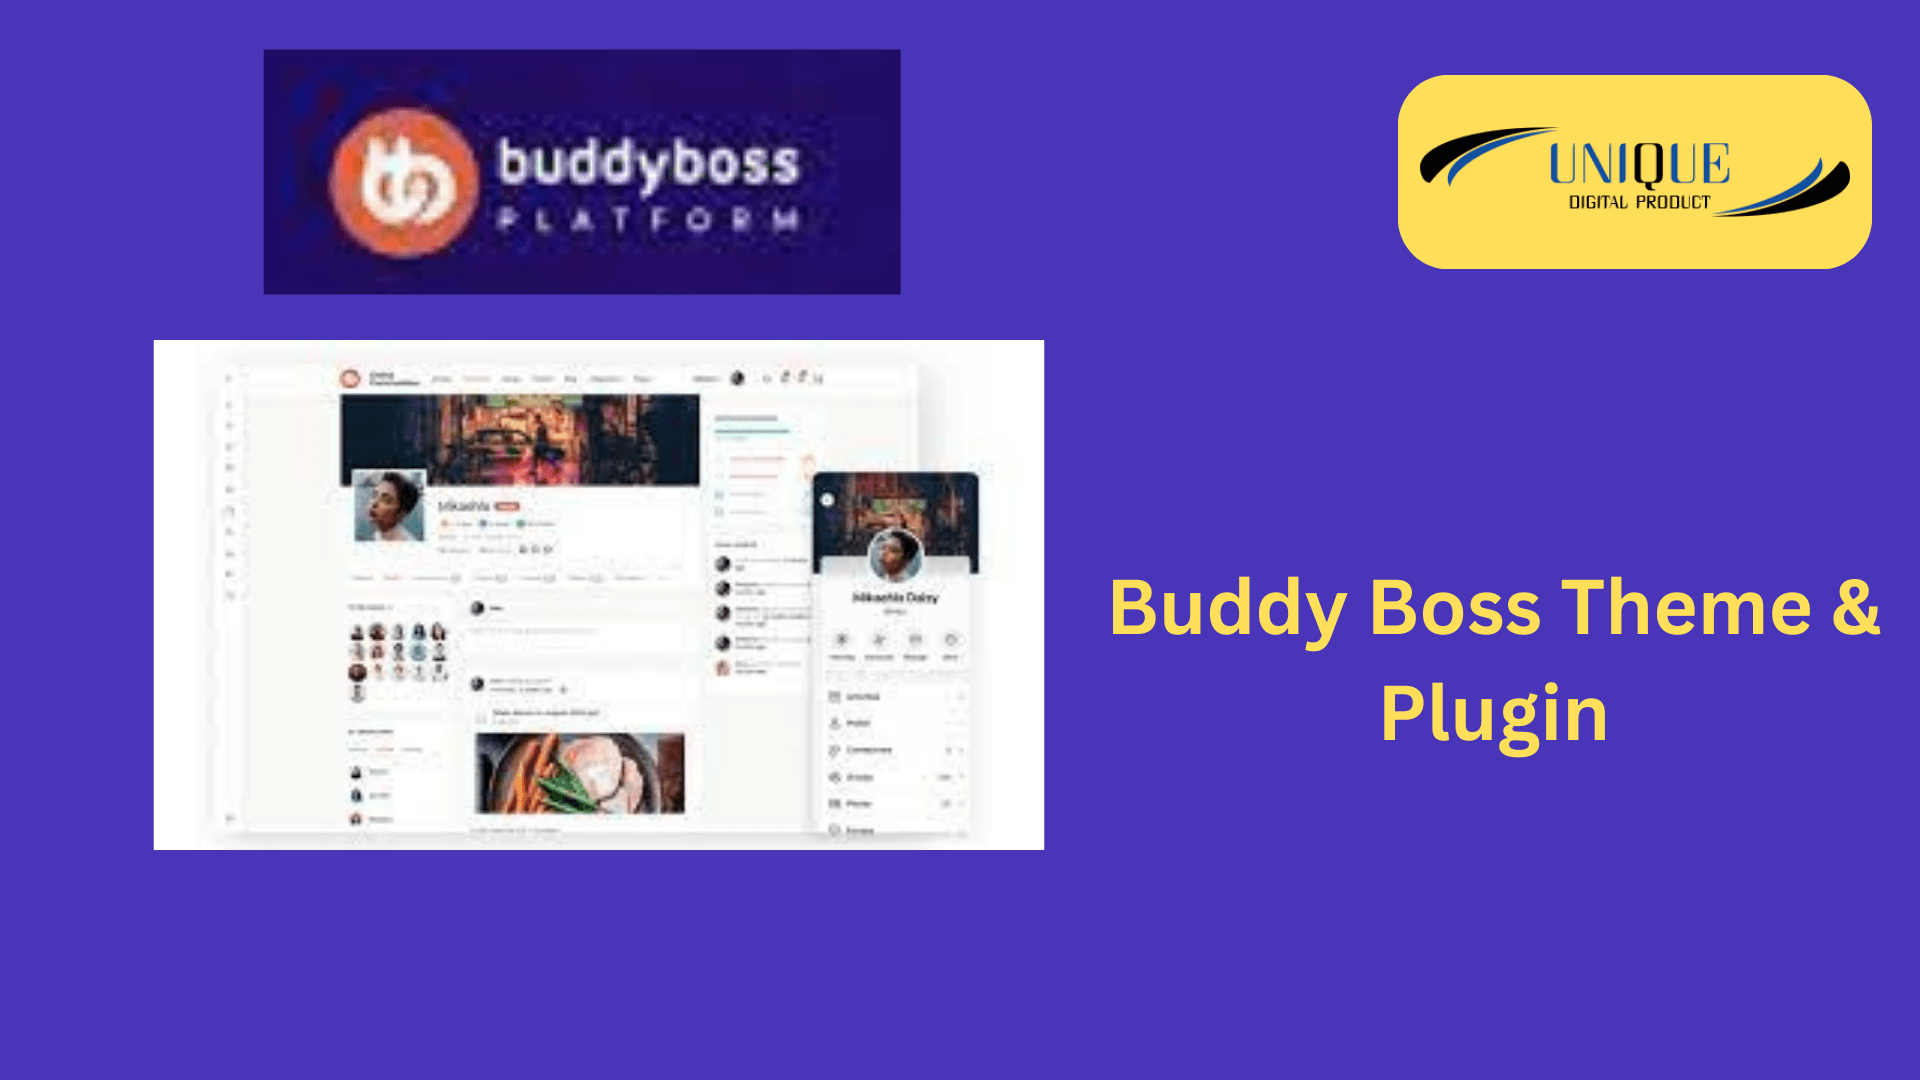 Buddy Boss Theme & Plugin